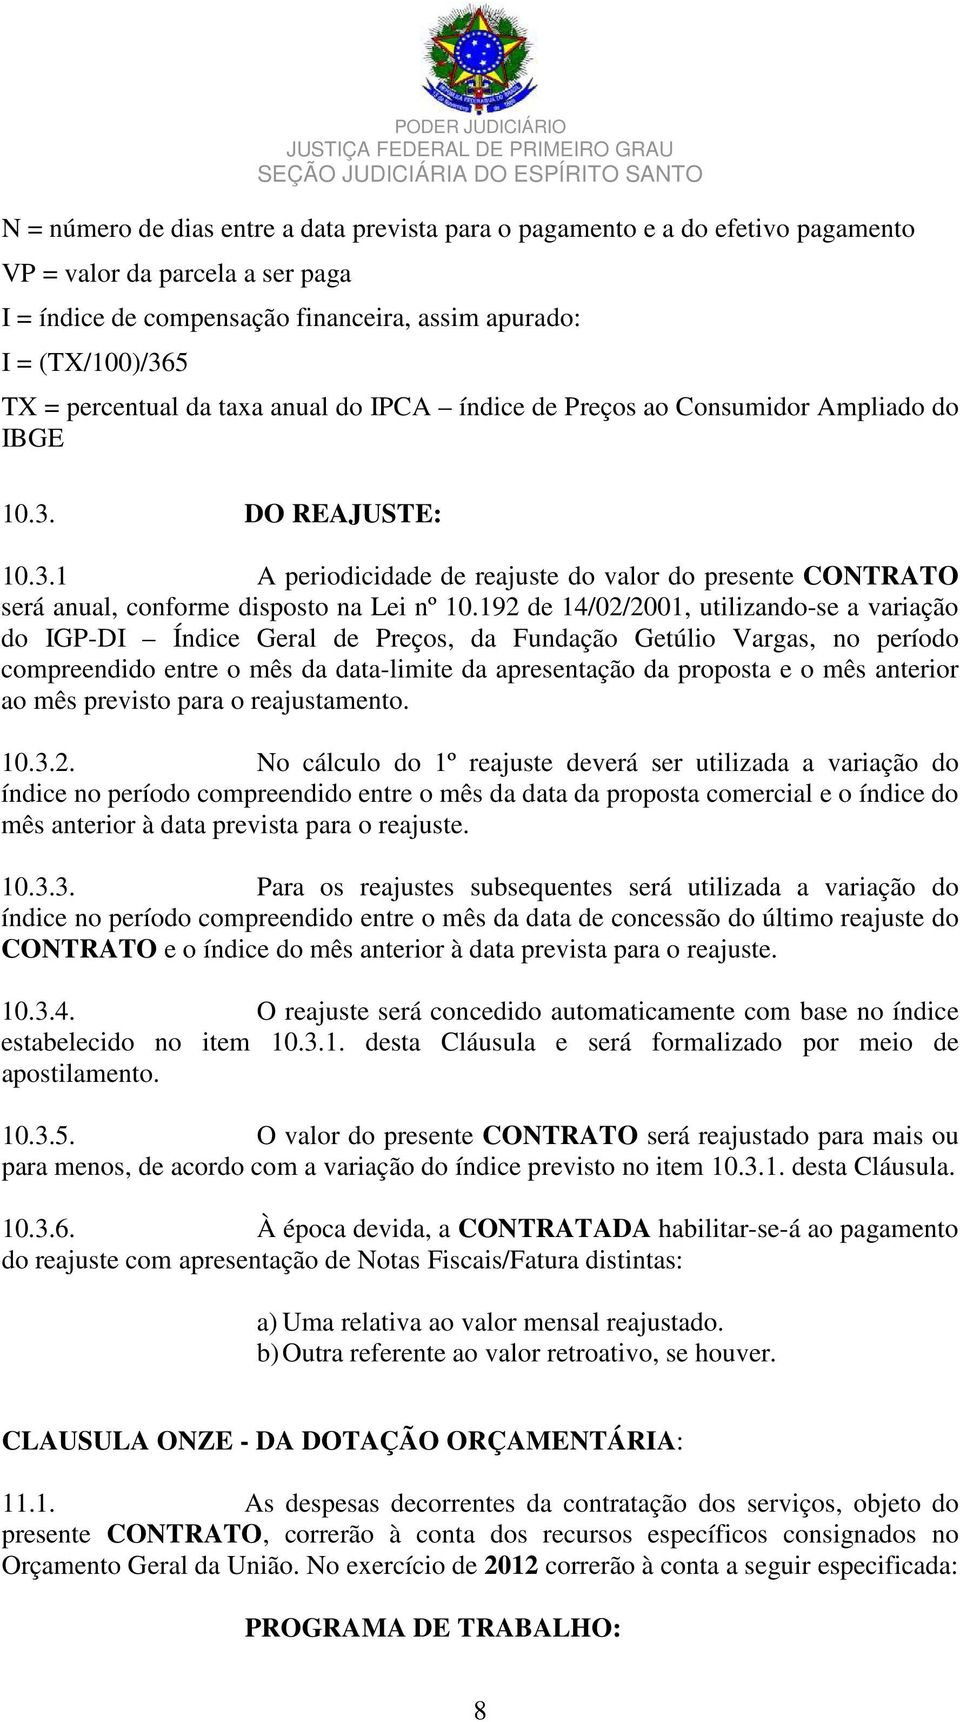 192 de 14/02/2001, utilizando-se a variação do IGP-DI Índice Geral de Preços, da Fundação Getúlio Vargas, no período compreendido entre o mês da data-limite da apresentação da proposta e o mês